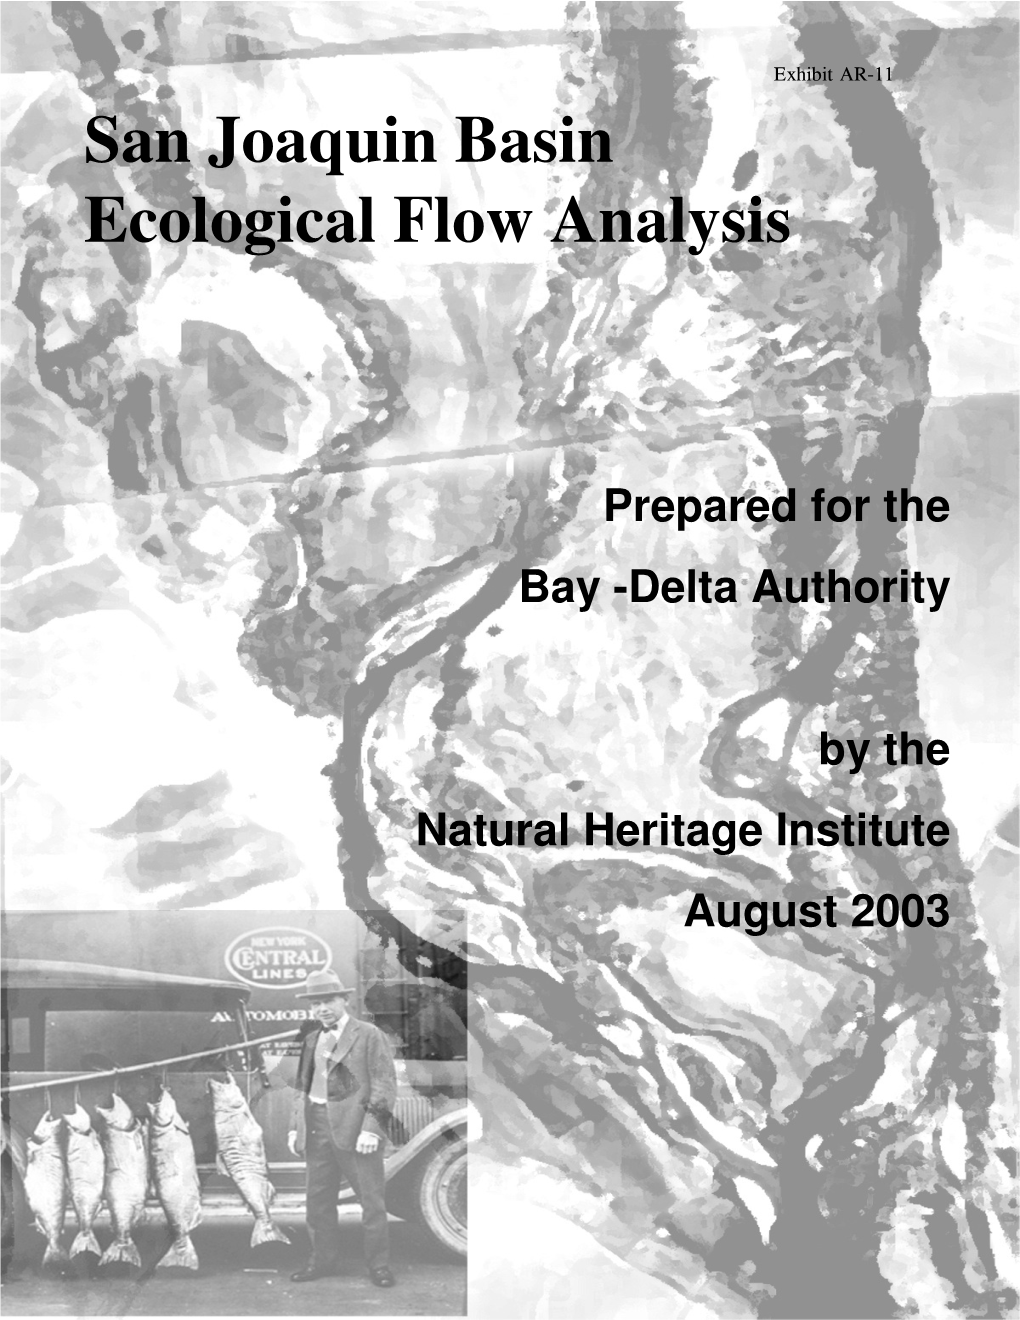 San Joaquin Basin Ecological Flow Analysis